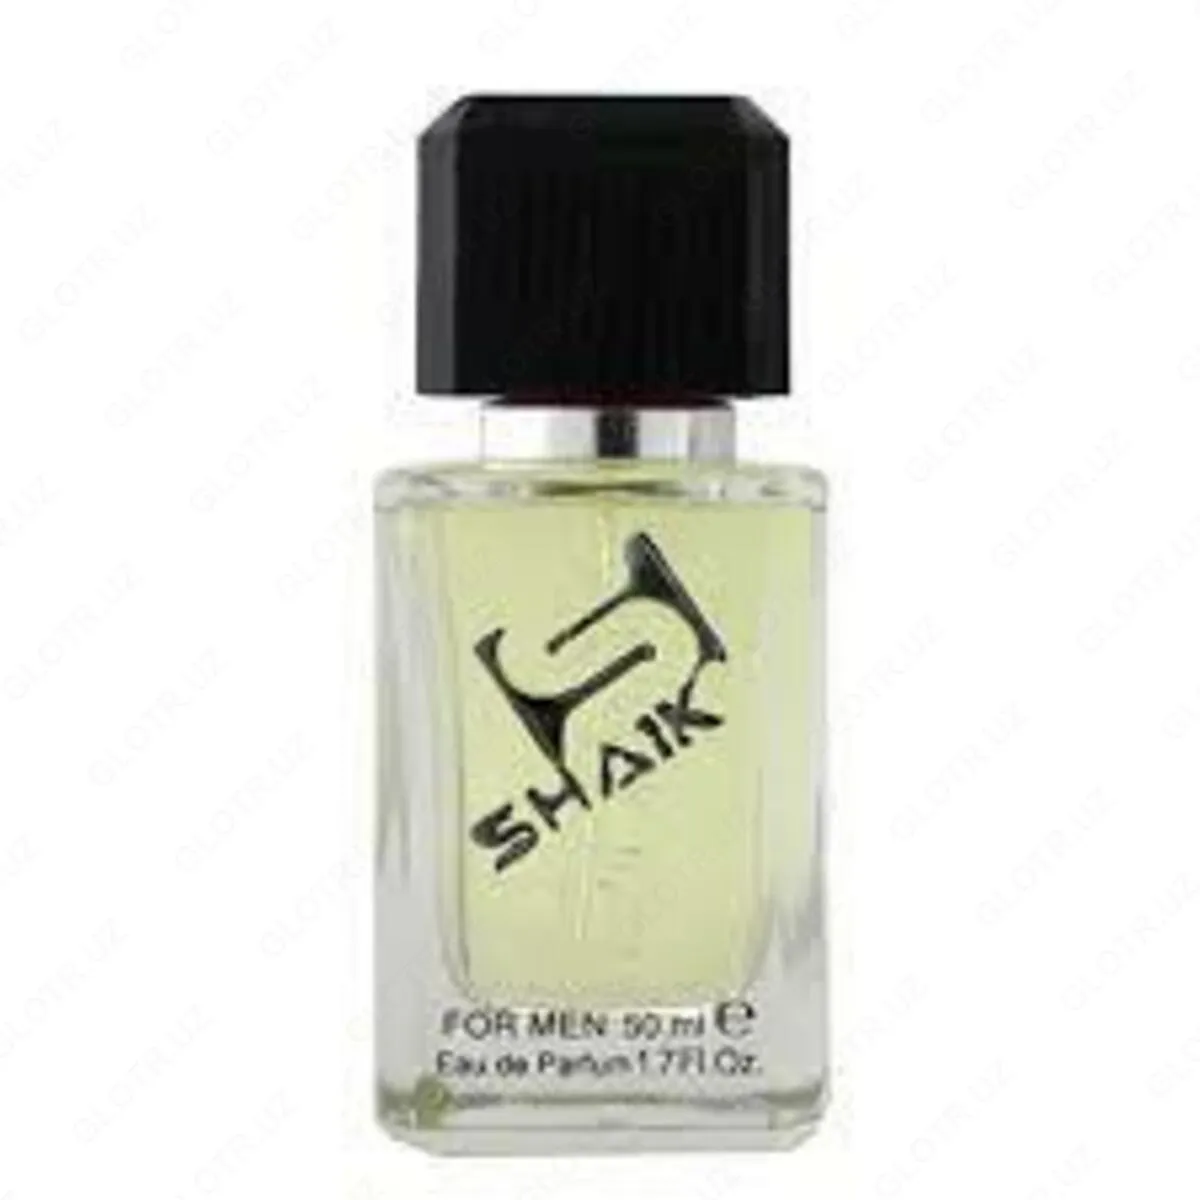 SHAIK 31 parfyum suvi  Fahrenheit Christian Dior#1